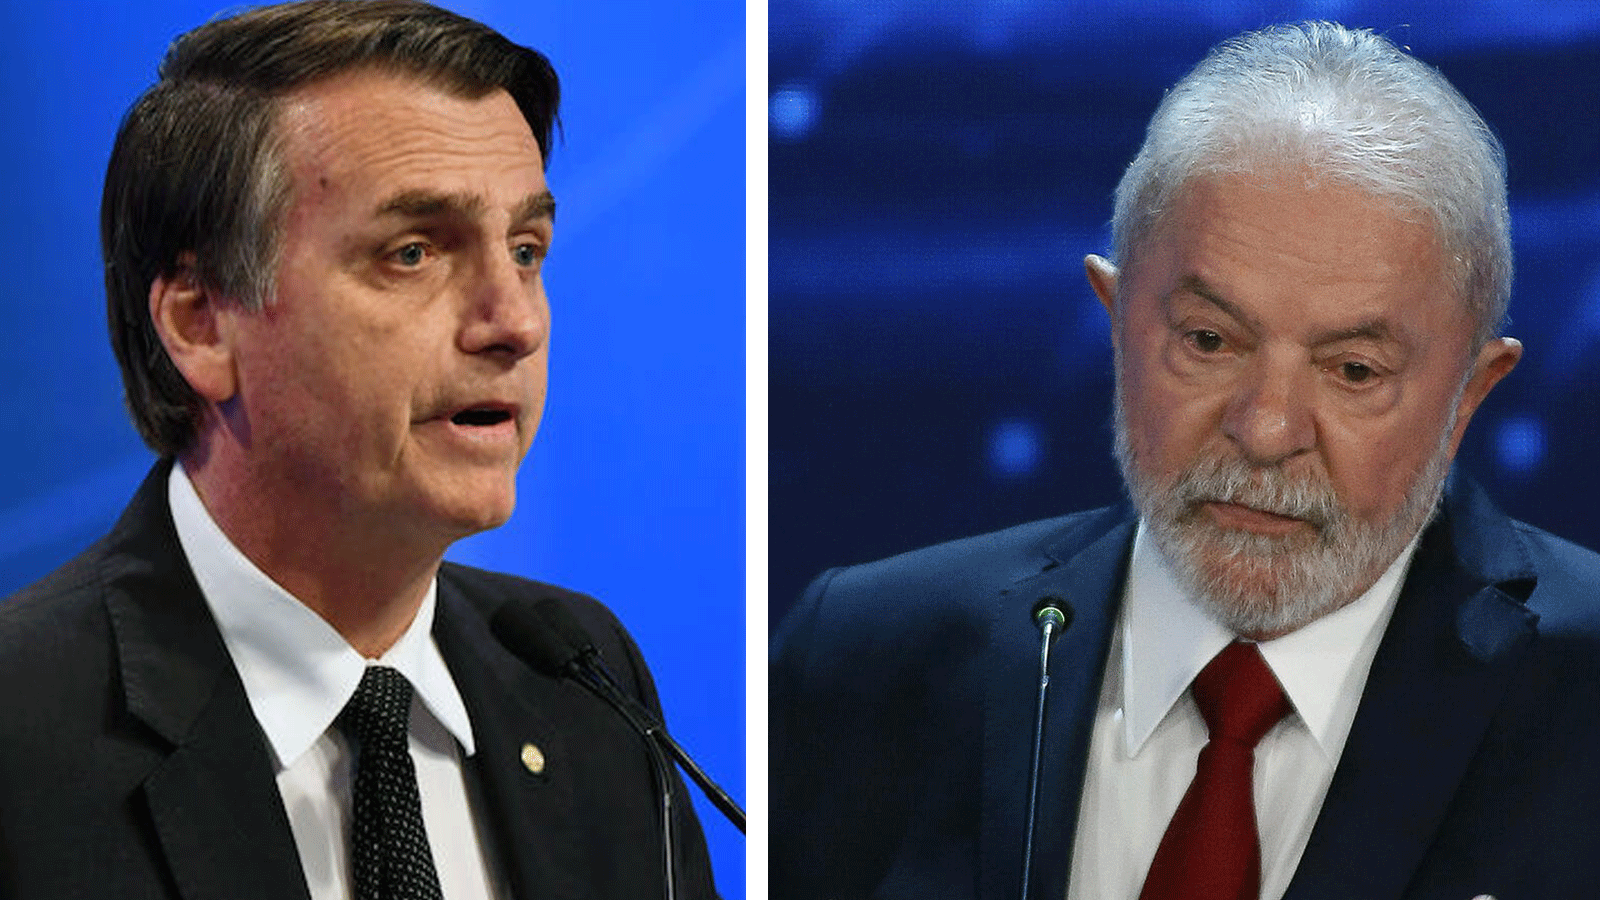 المتنافسان الرئيسيان في الانتخابات الرئاسية البرزايلية لويس إيناسيو لولا دا سيلفا وجايير بولسونارو